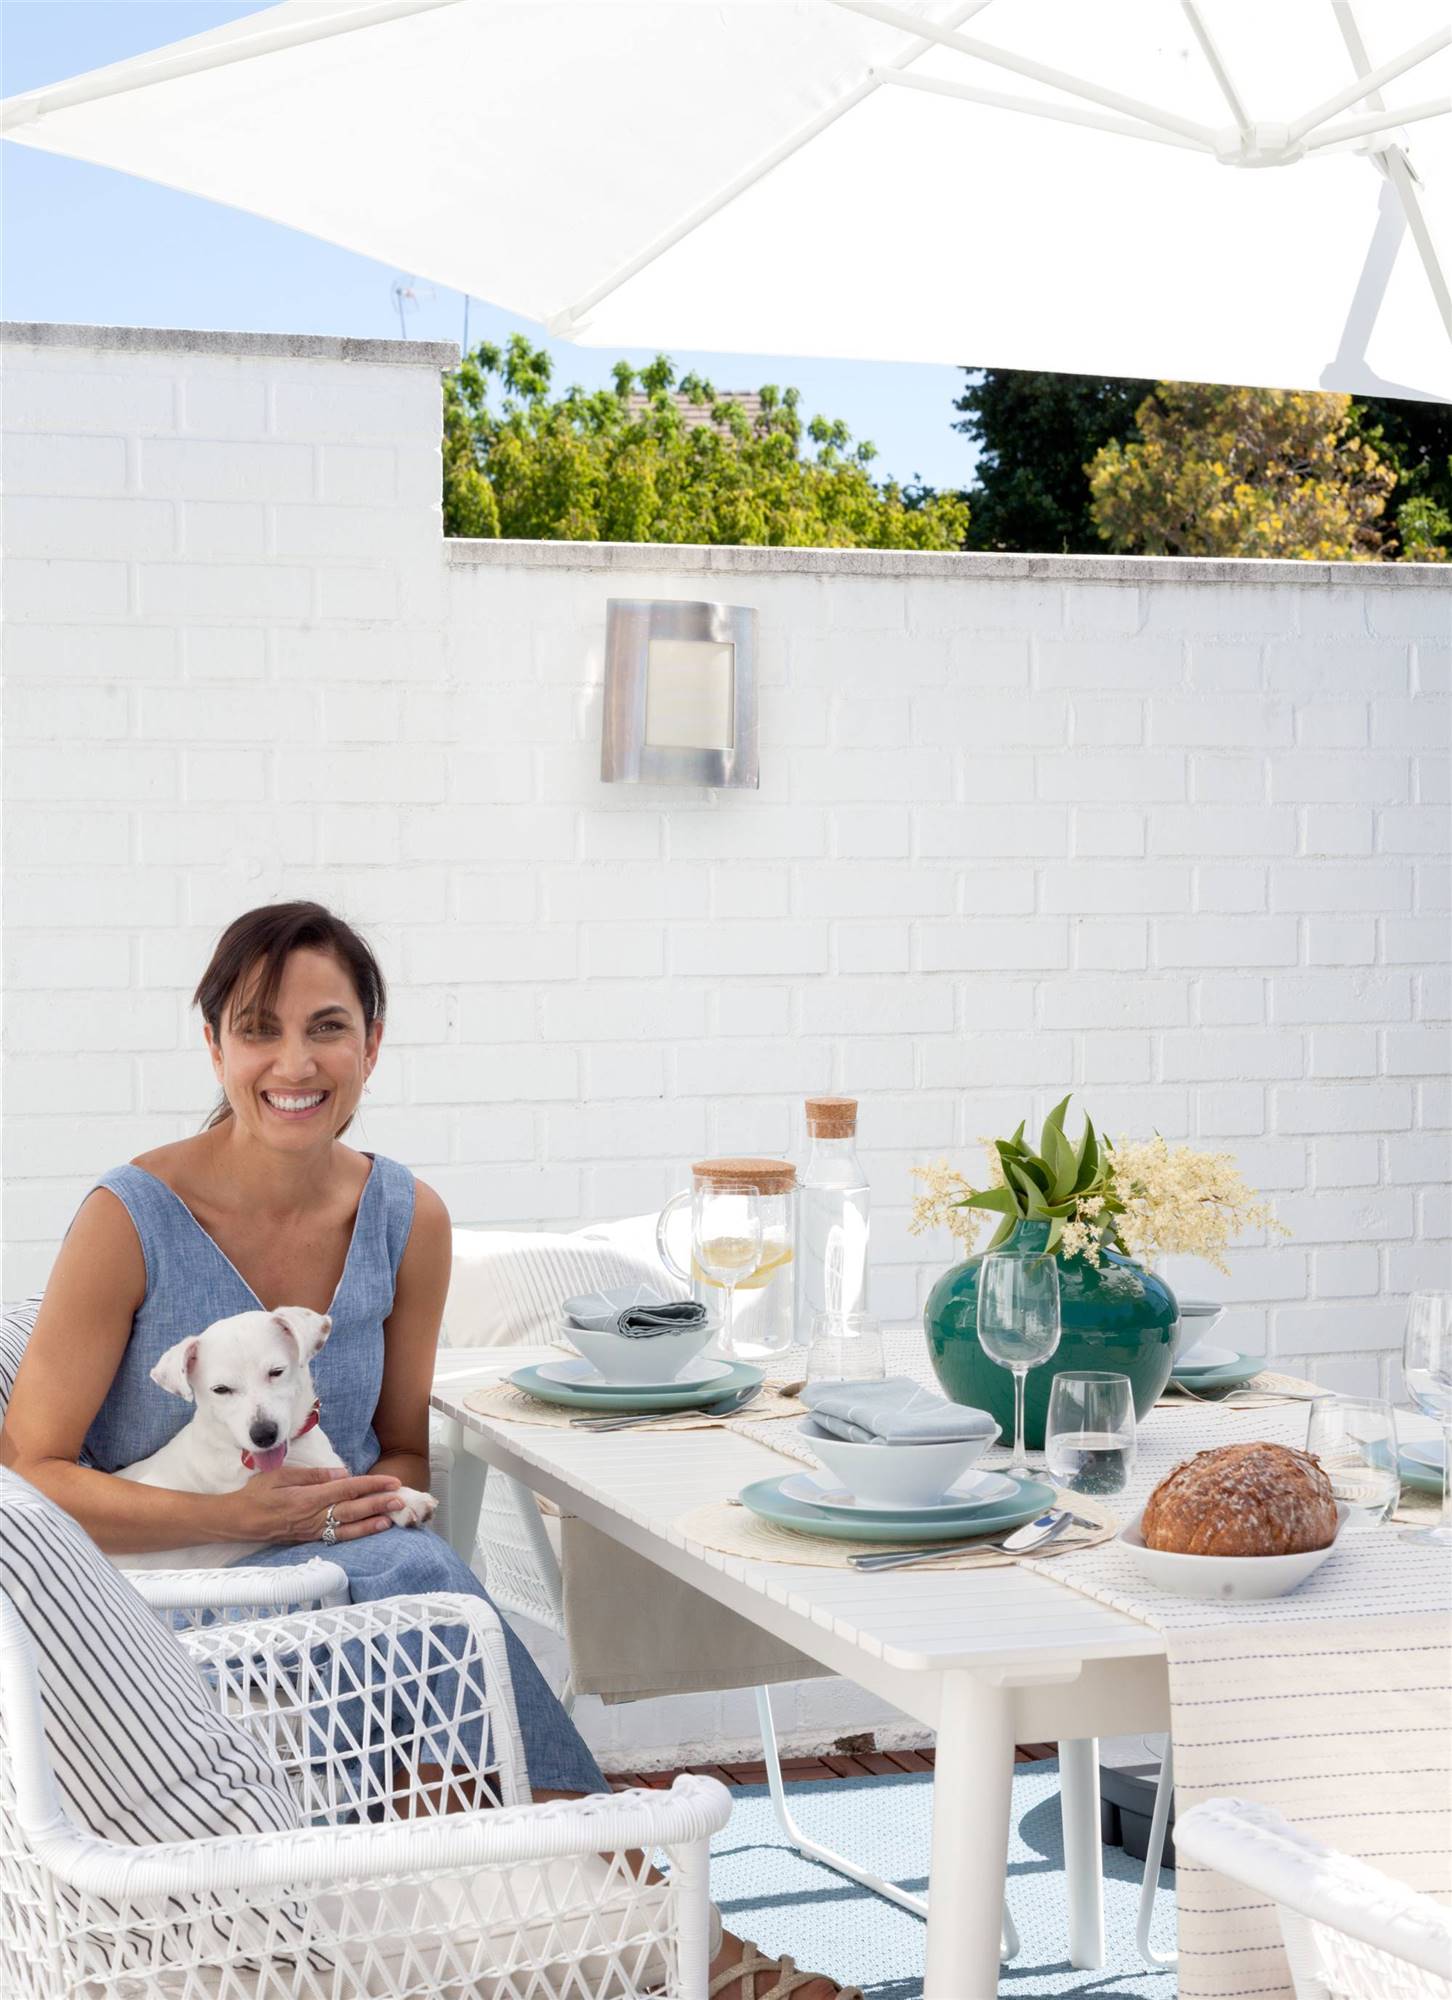 Comedor exterior de la terraza de Toni Acosta, que está posando junto a su perrita Amy.